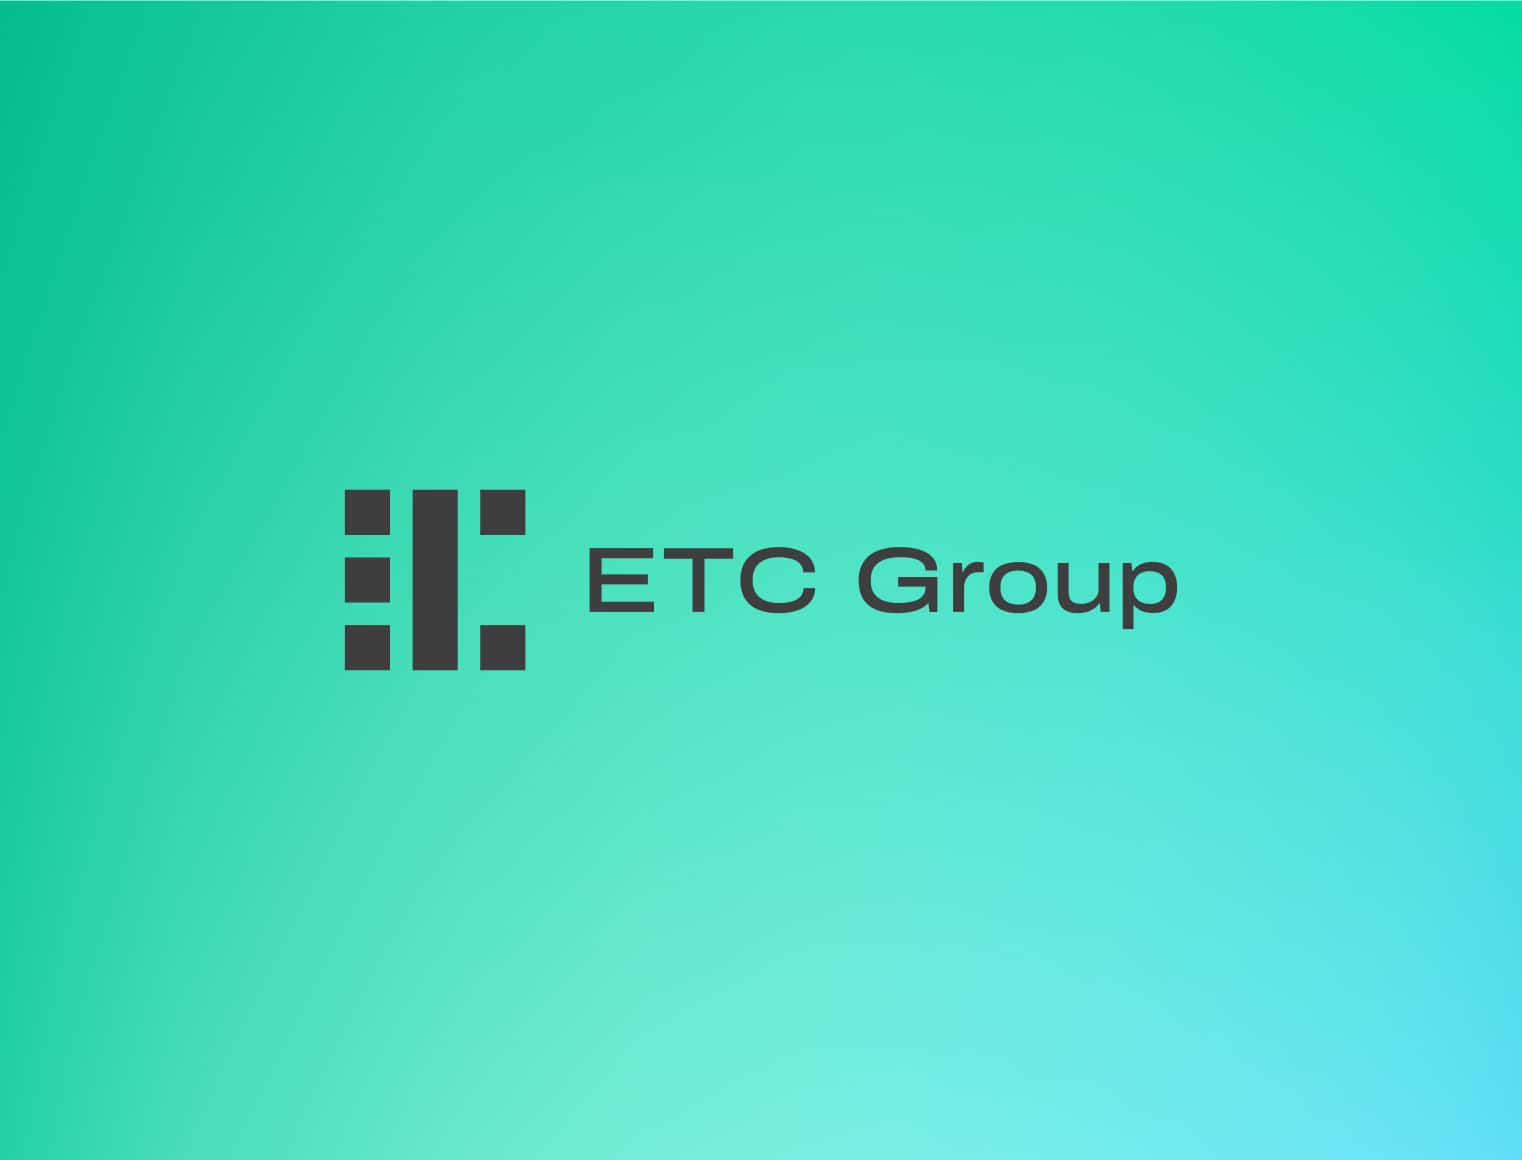 Verwaltetes Vermögen der ETC Group steigt über 1- Milliarde-US-Dollar-Schwelle